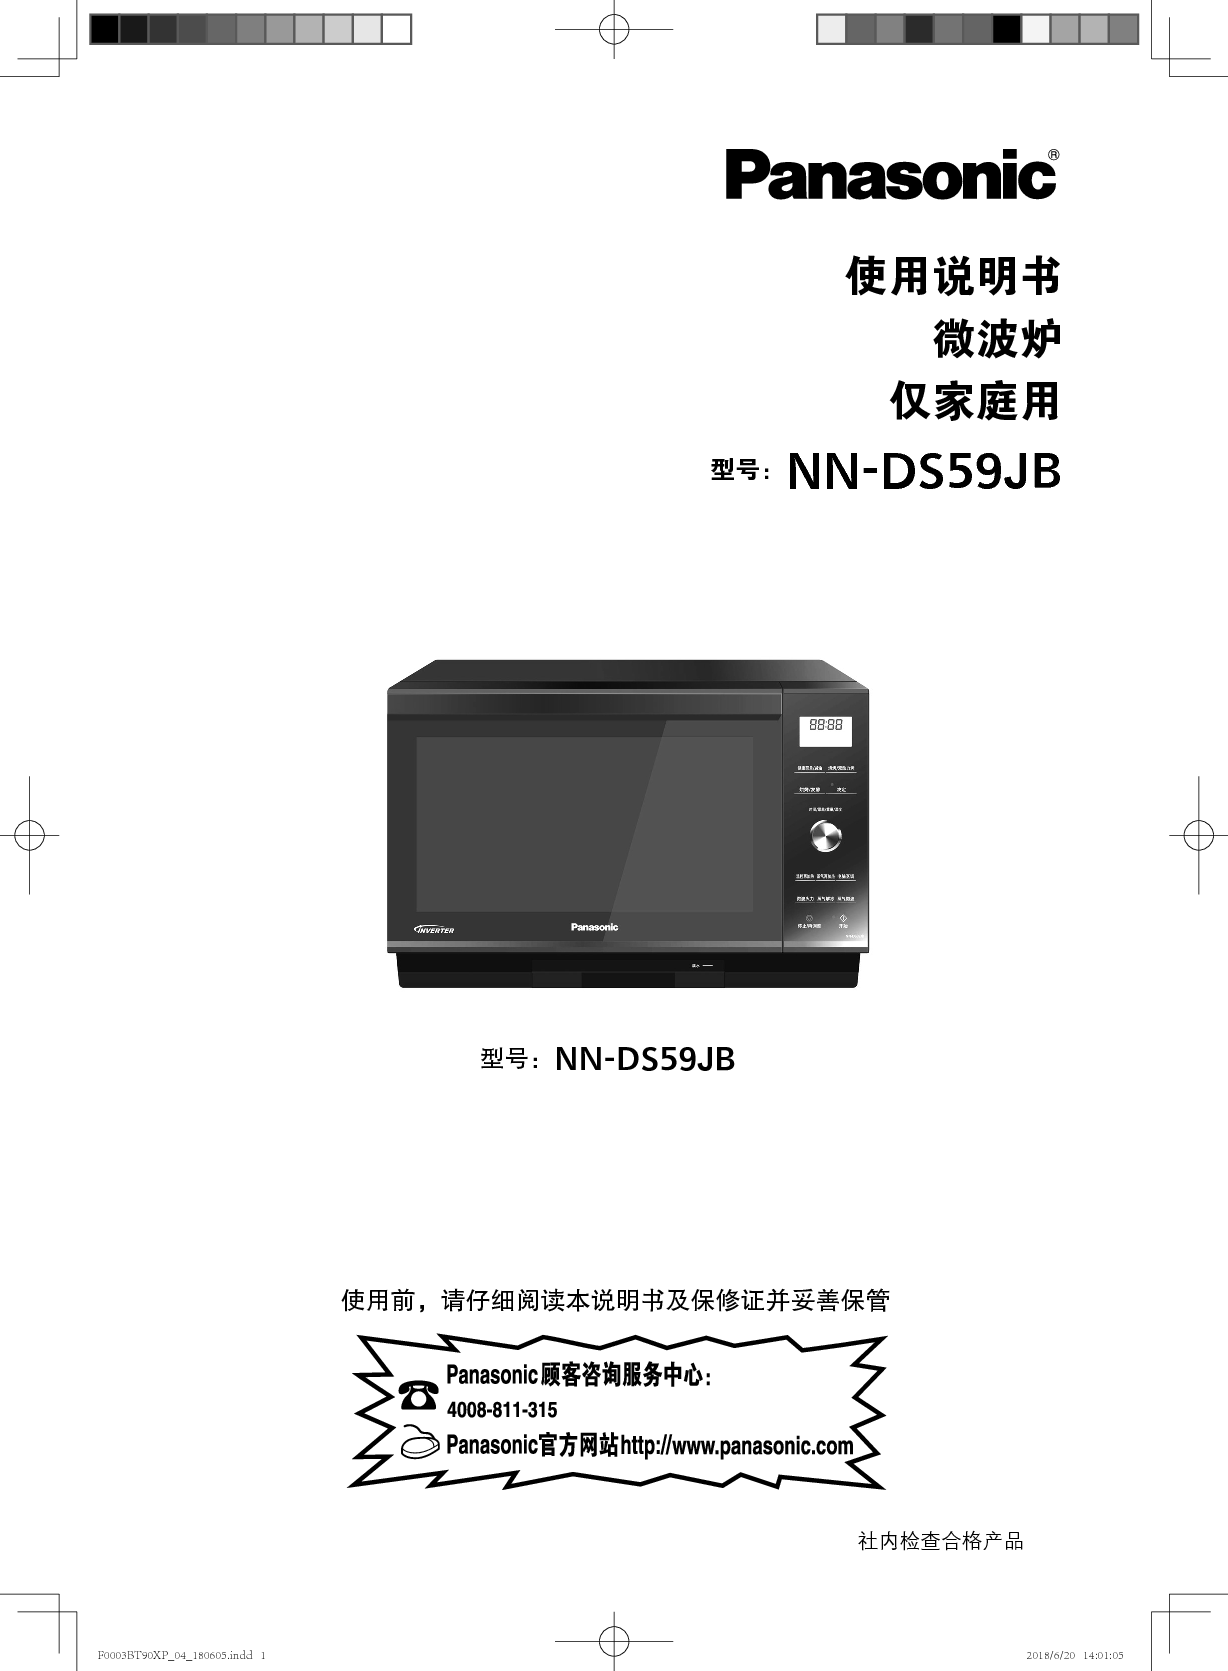 松下 Panasonic NN-DS59JB 使用说明书 封面